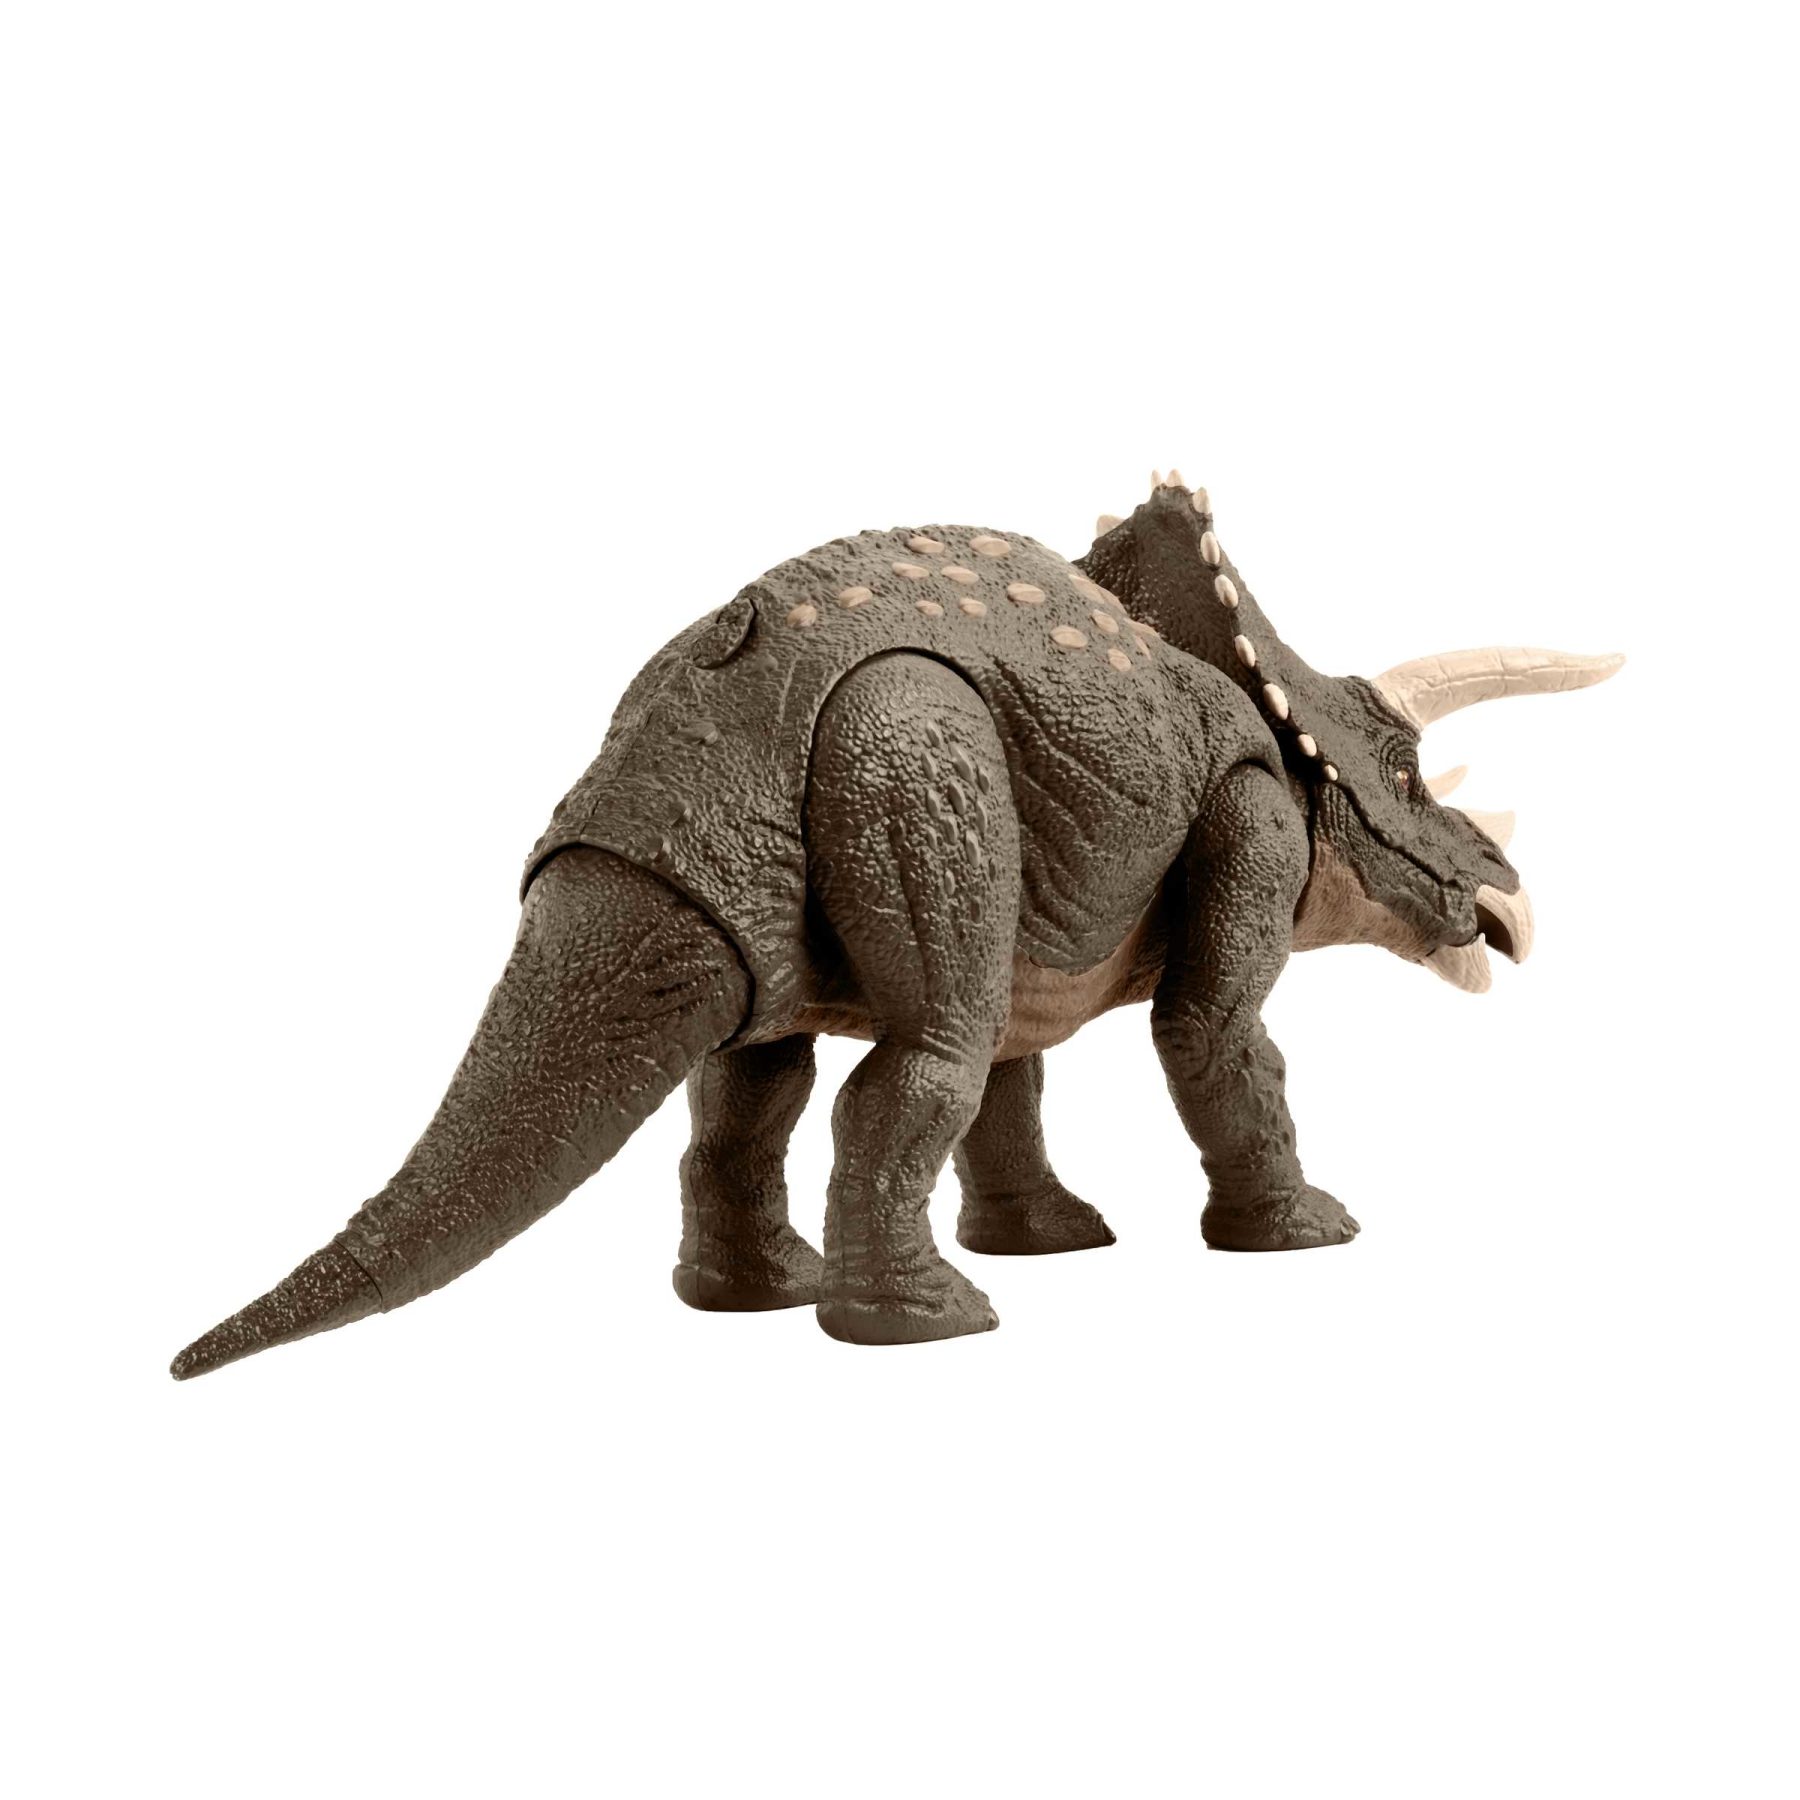 Jurassic world - triceratopo protettore dell'habitat, dinosauro lungo 43+ cm difensore del deserto, realizzato per il 60% in plastica riciclata, 4+ anni, hpp88 - Jurassic World